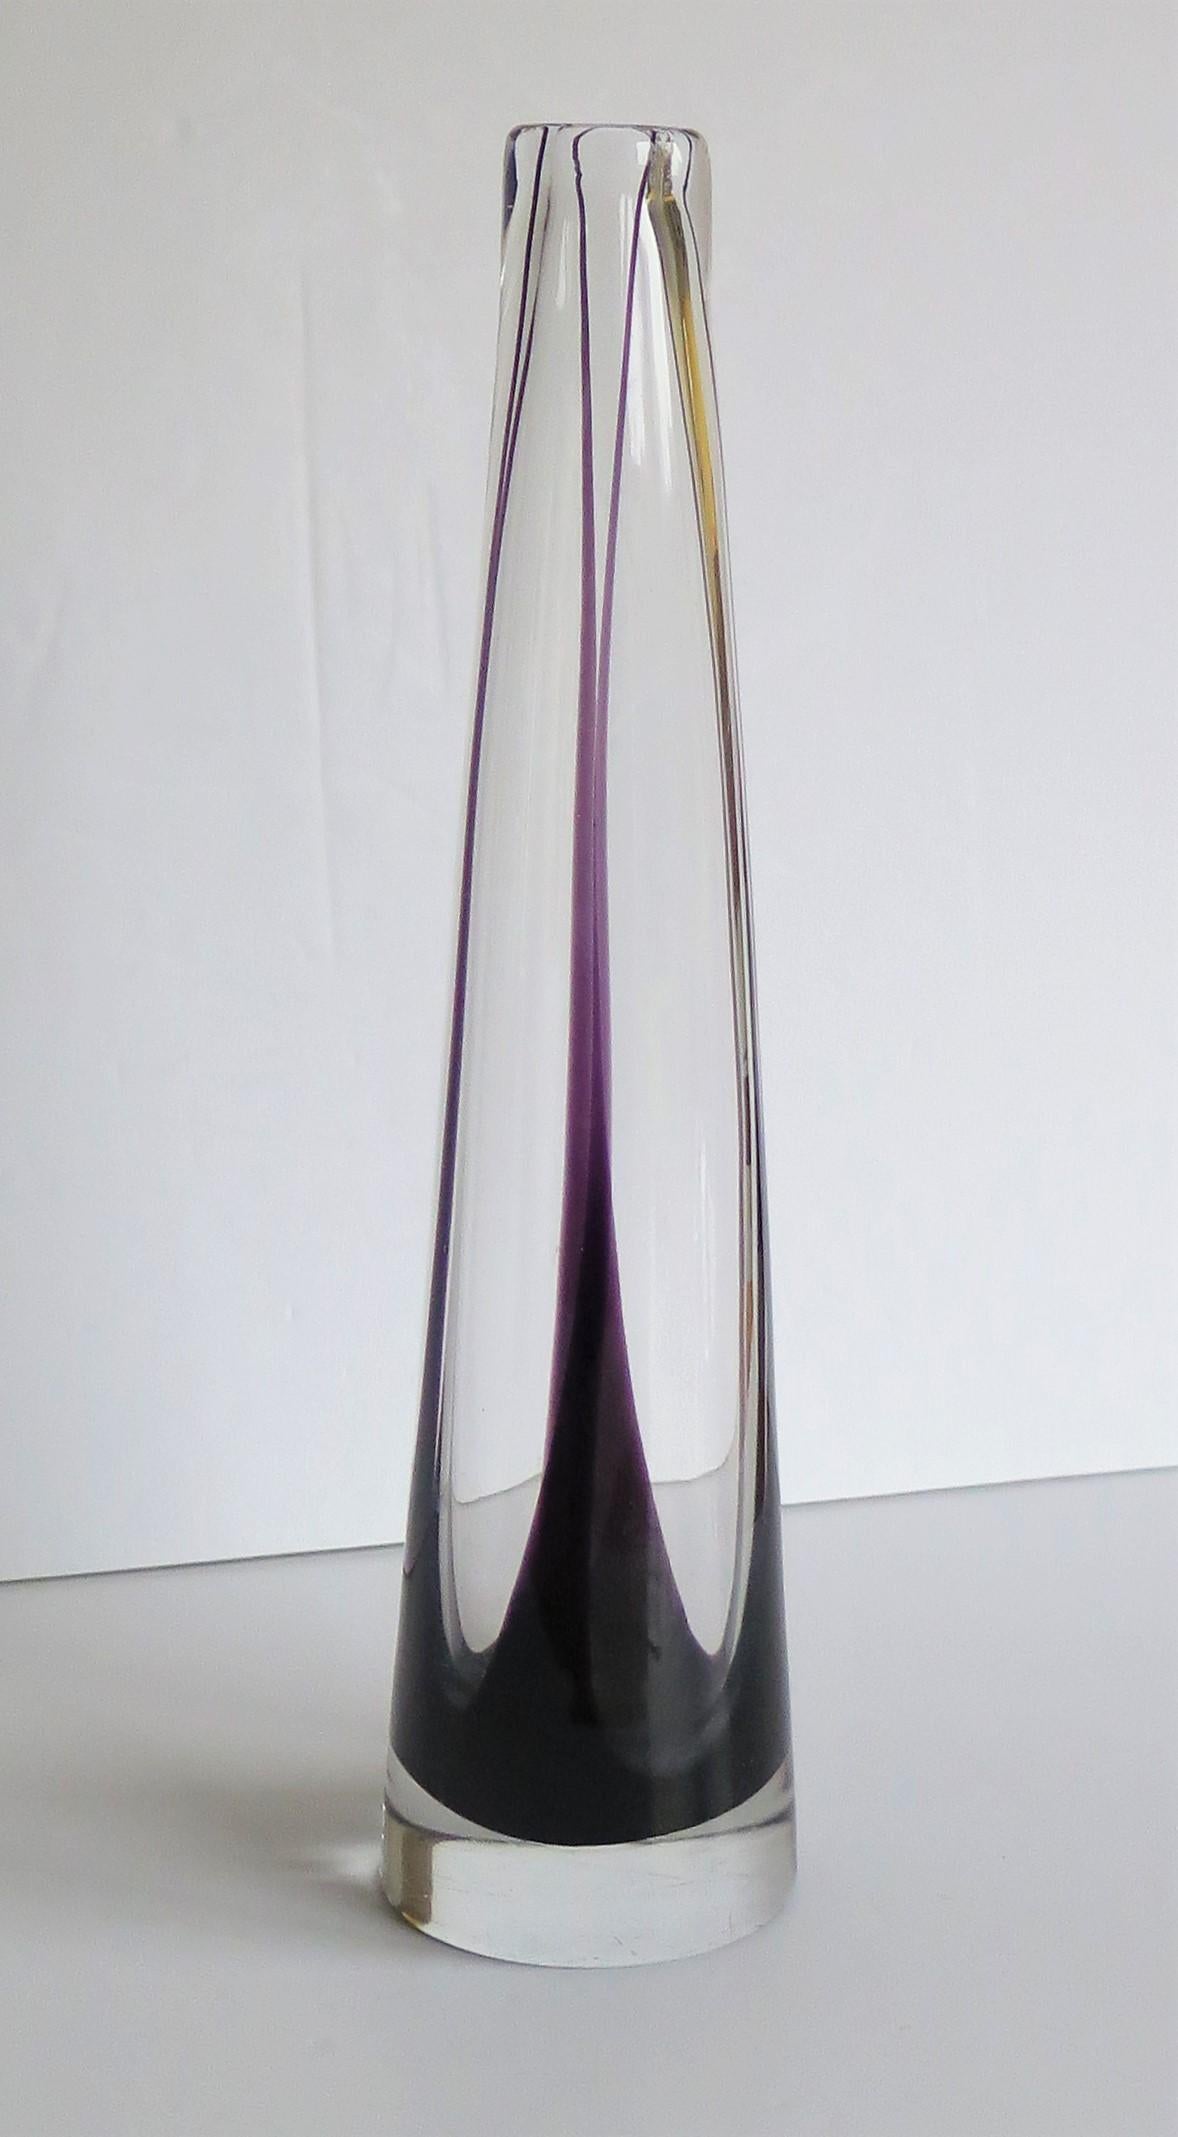 Dies ist eine schwedische Mid-Century Scandinavian Mid Century Modern, hohe Kunstglas Sommerso Vase, die dem Designer Vicke Lindstrand, für den Hersteller Kosta Glass of Sweden, aus ca. 1960.

Vicke Lindstrand wird von vielen als einer der